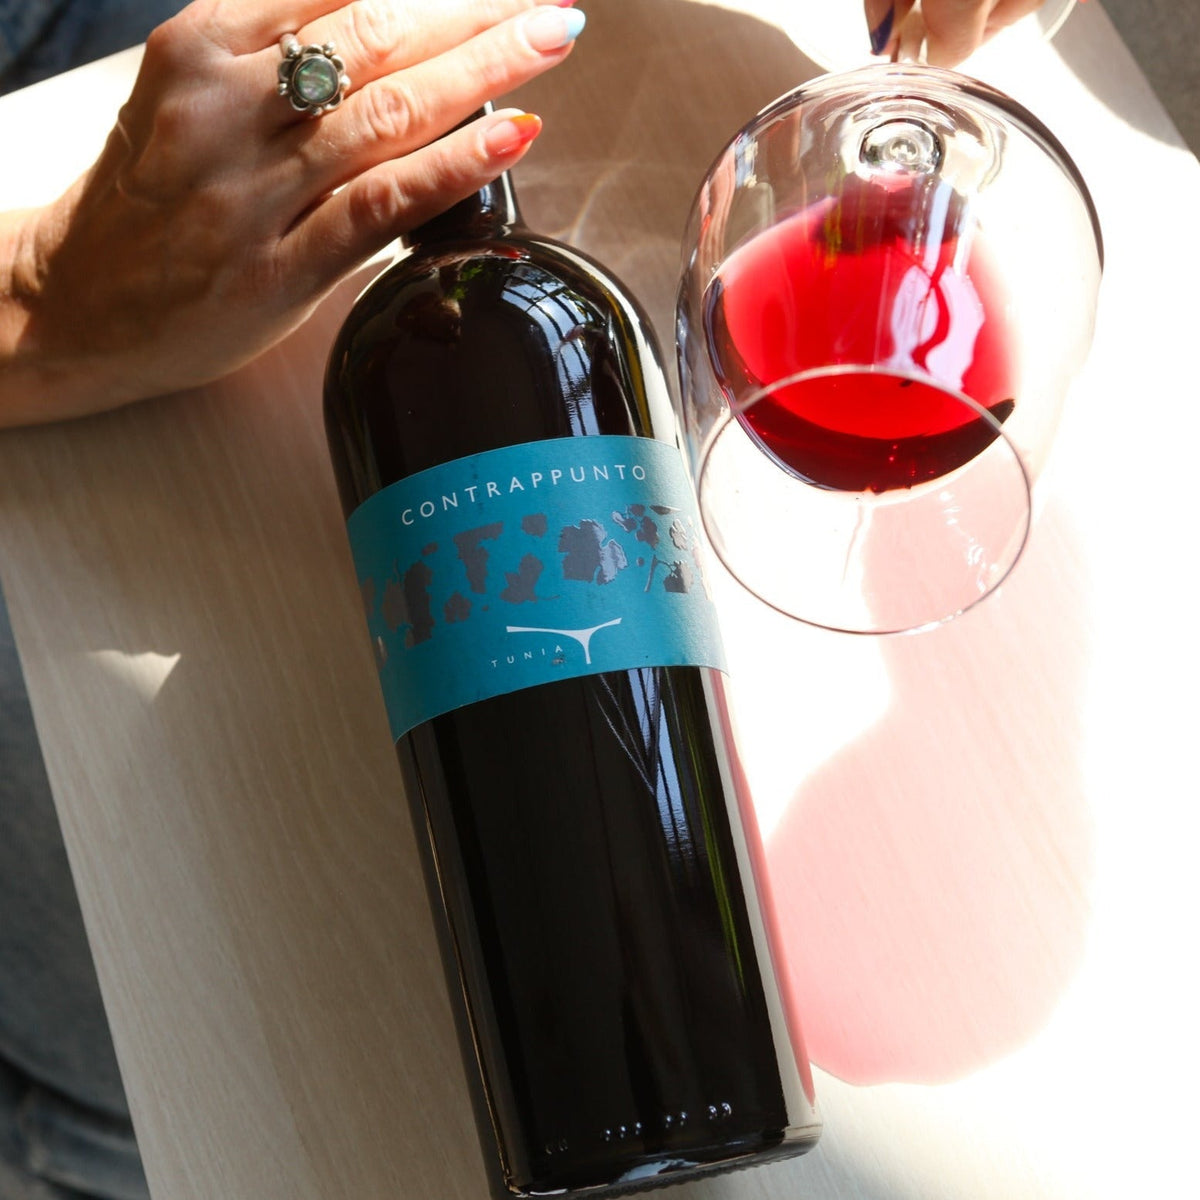 Contrappunto 2019 - Rouge - Domaine Tunia - Le vin dans les voiles